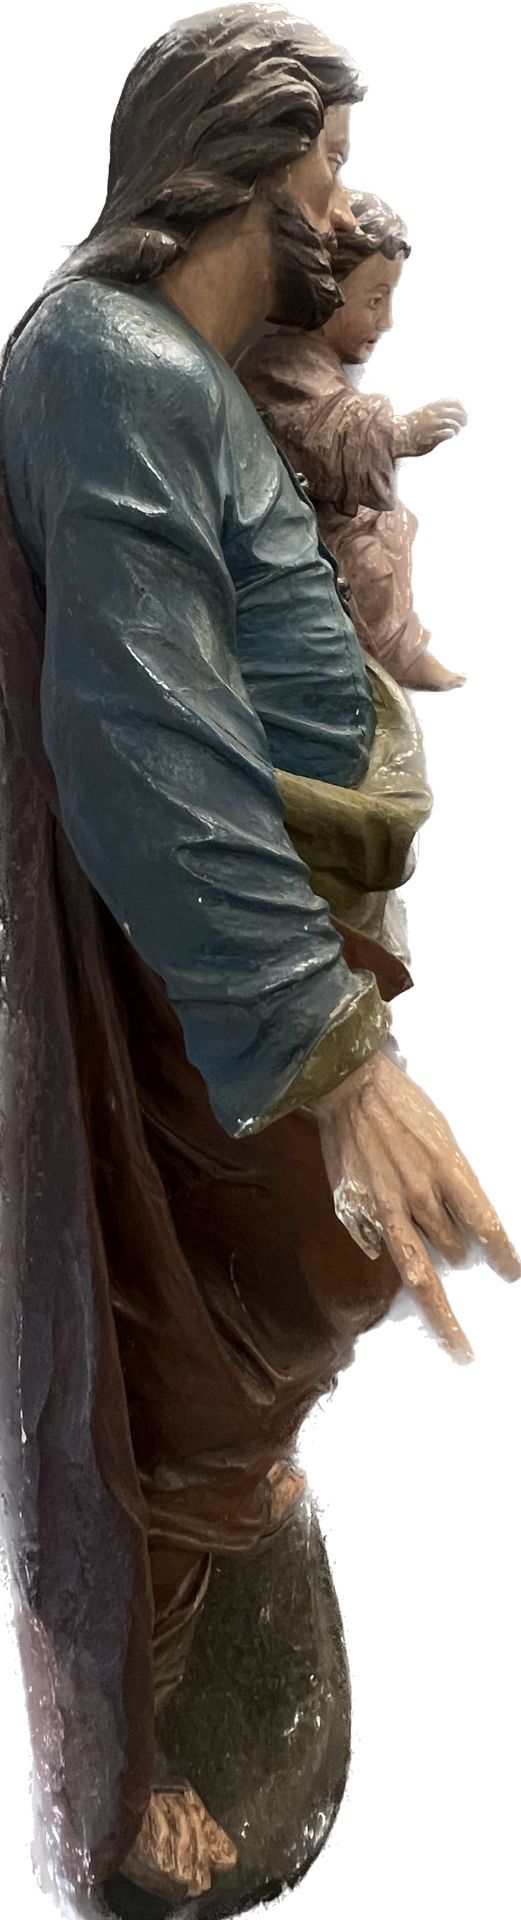 Lebensgroße Skulptur. Hl. Josef mit Christusknaben. Wohl 17. / 18. Jahrhundert. Süddeutschland. - Bild 10 aus 20